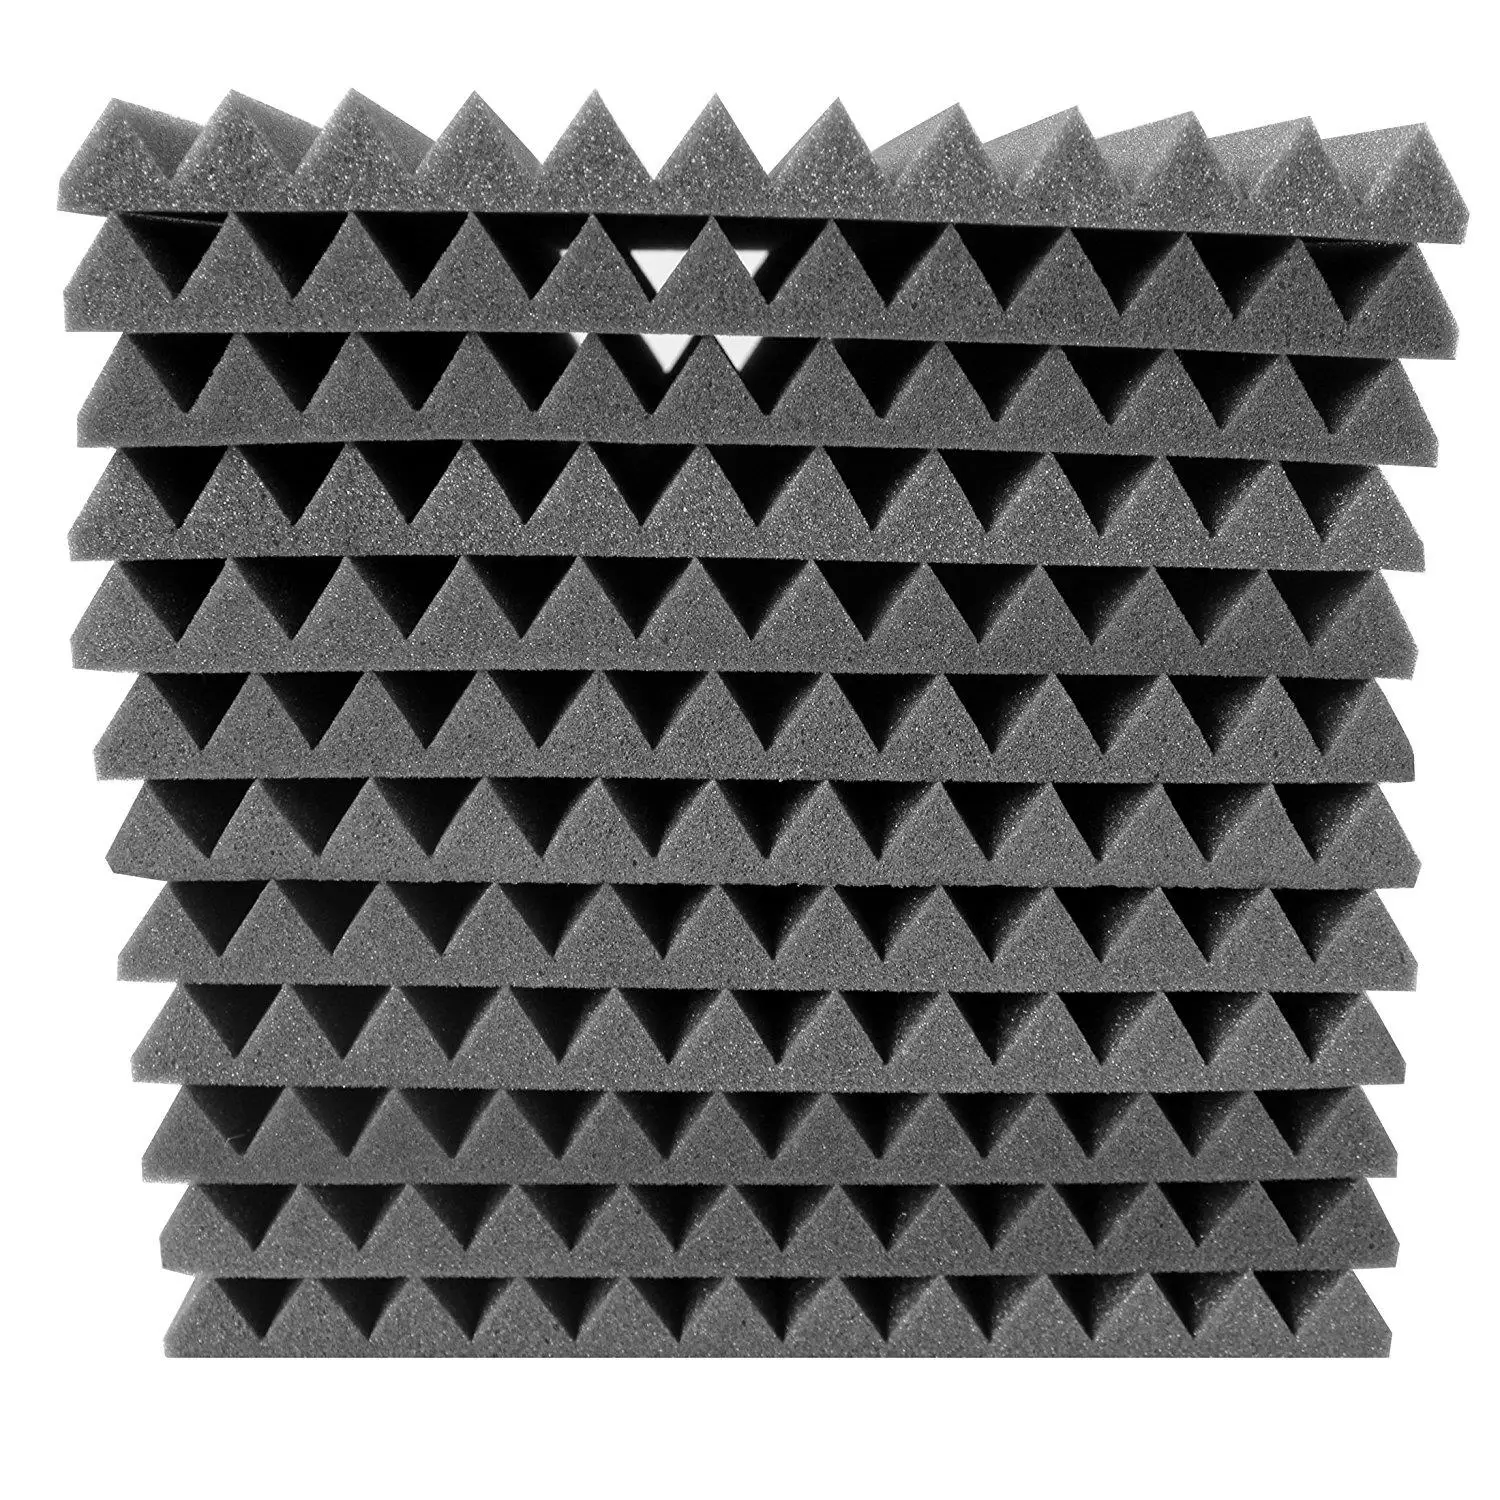 12 ПАК-акустические панели пена Инженерная губка клинья звукоизоляционные панели 1 дюймов x 12 дюймов x 12 дюймов